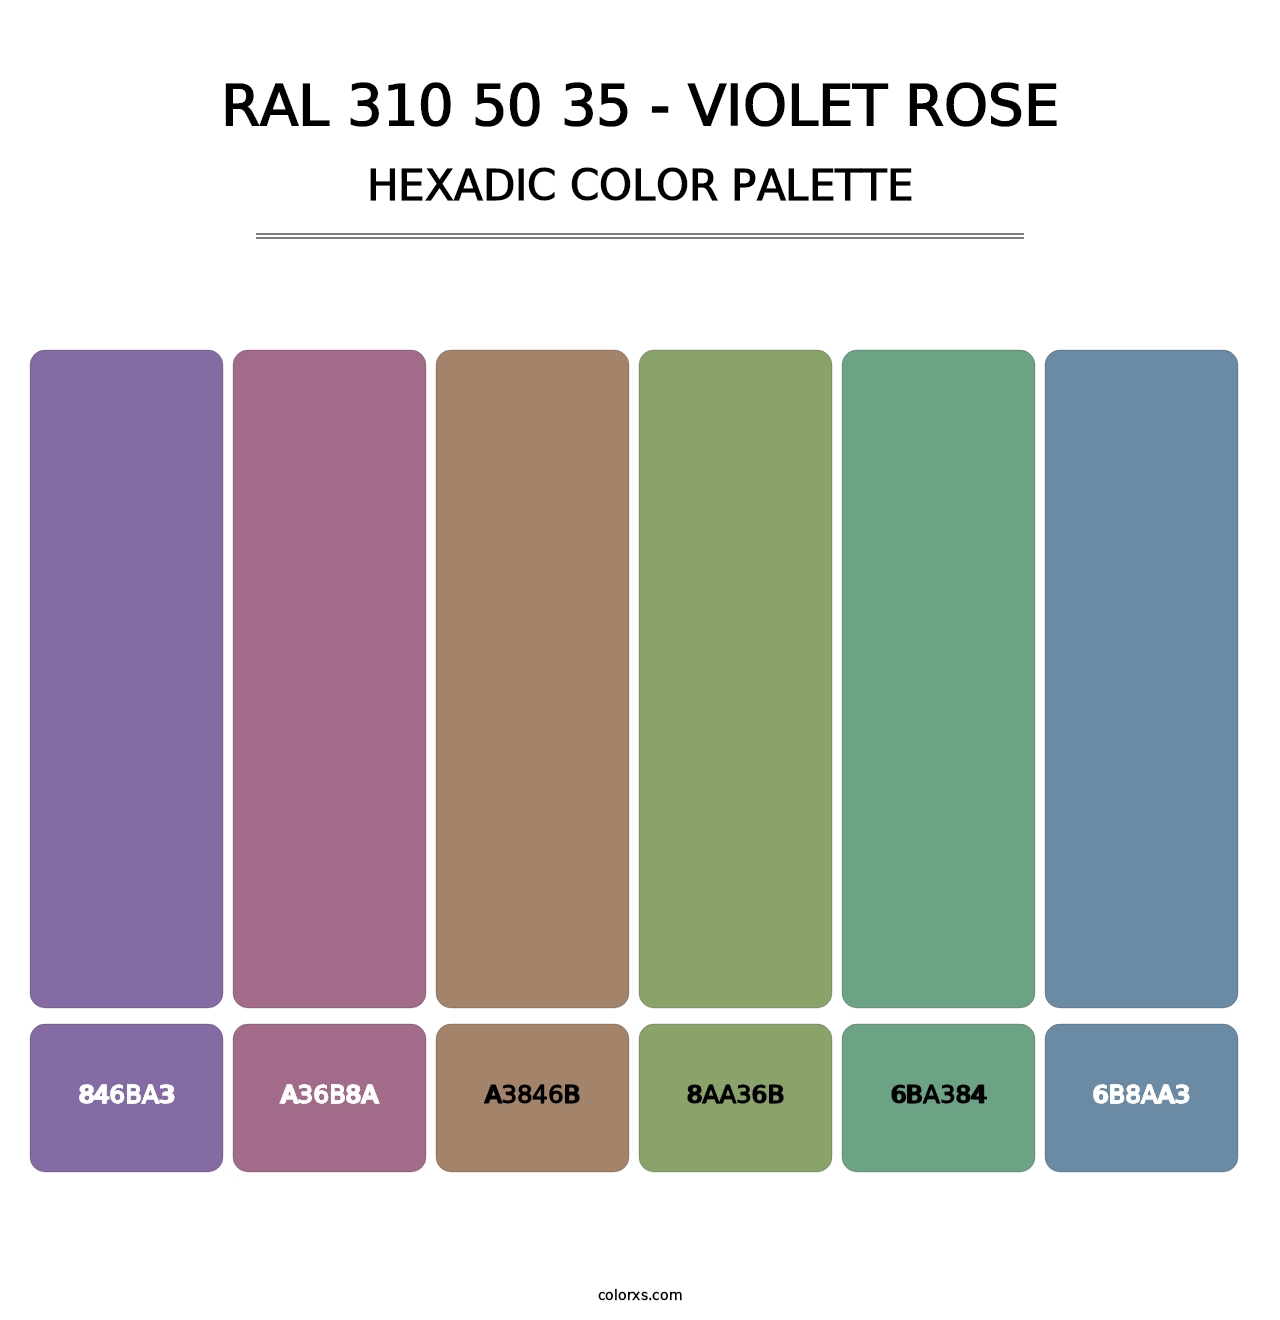 RAL 310 50 35 - Violet Rose - Hexadic Color Palette